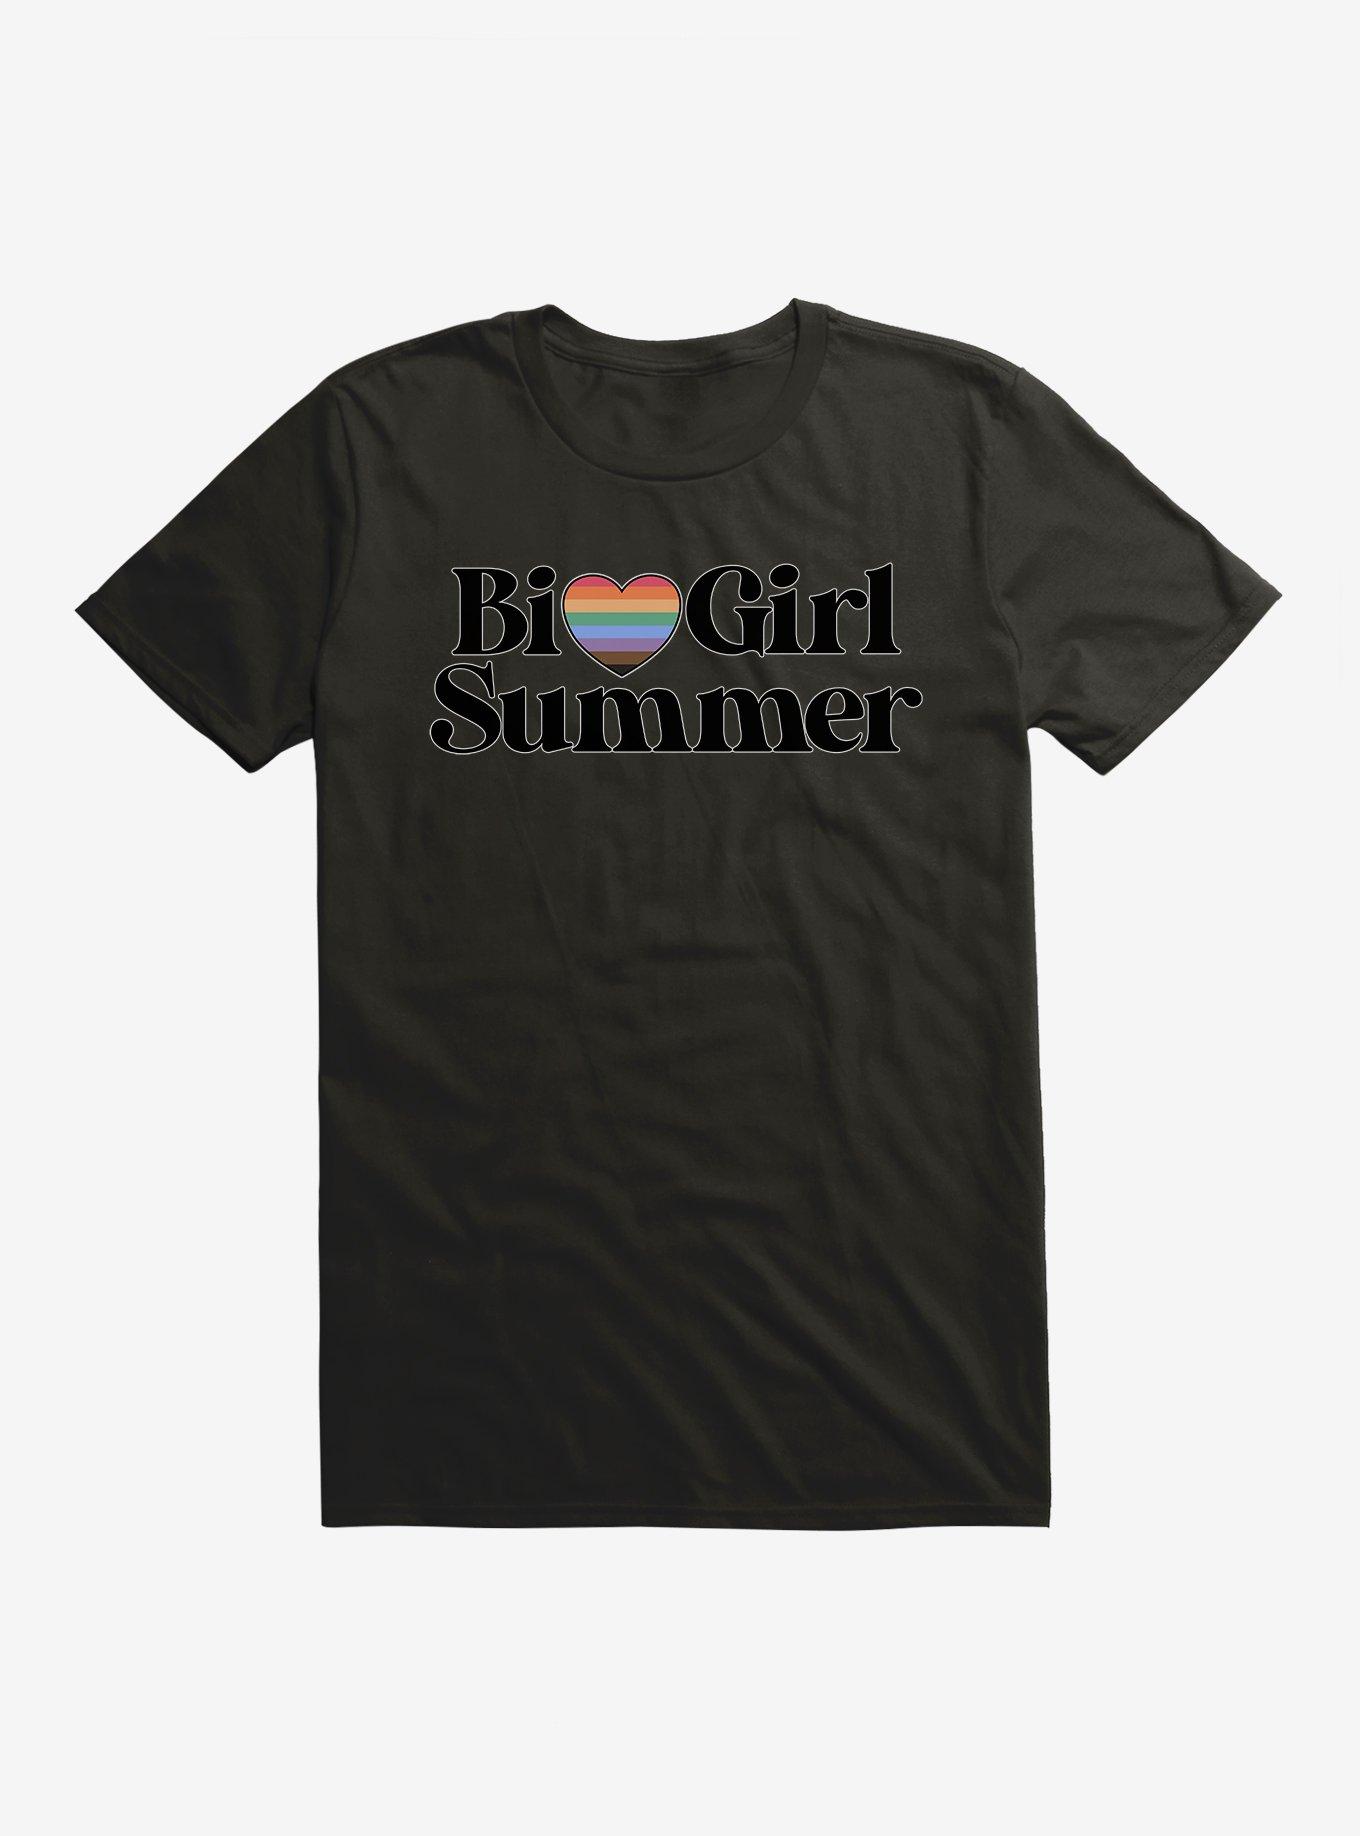 Pride Bi Girl Summer T Shirt Hot Topic